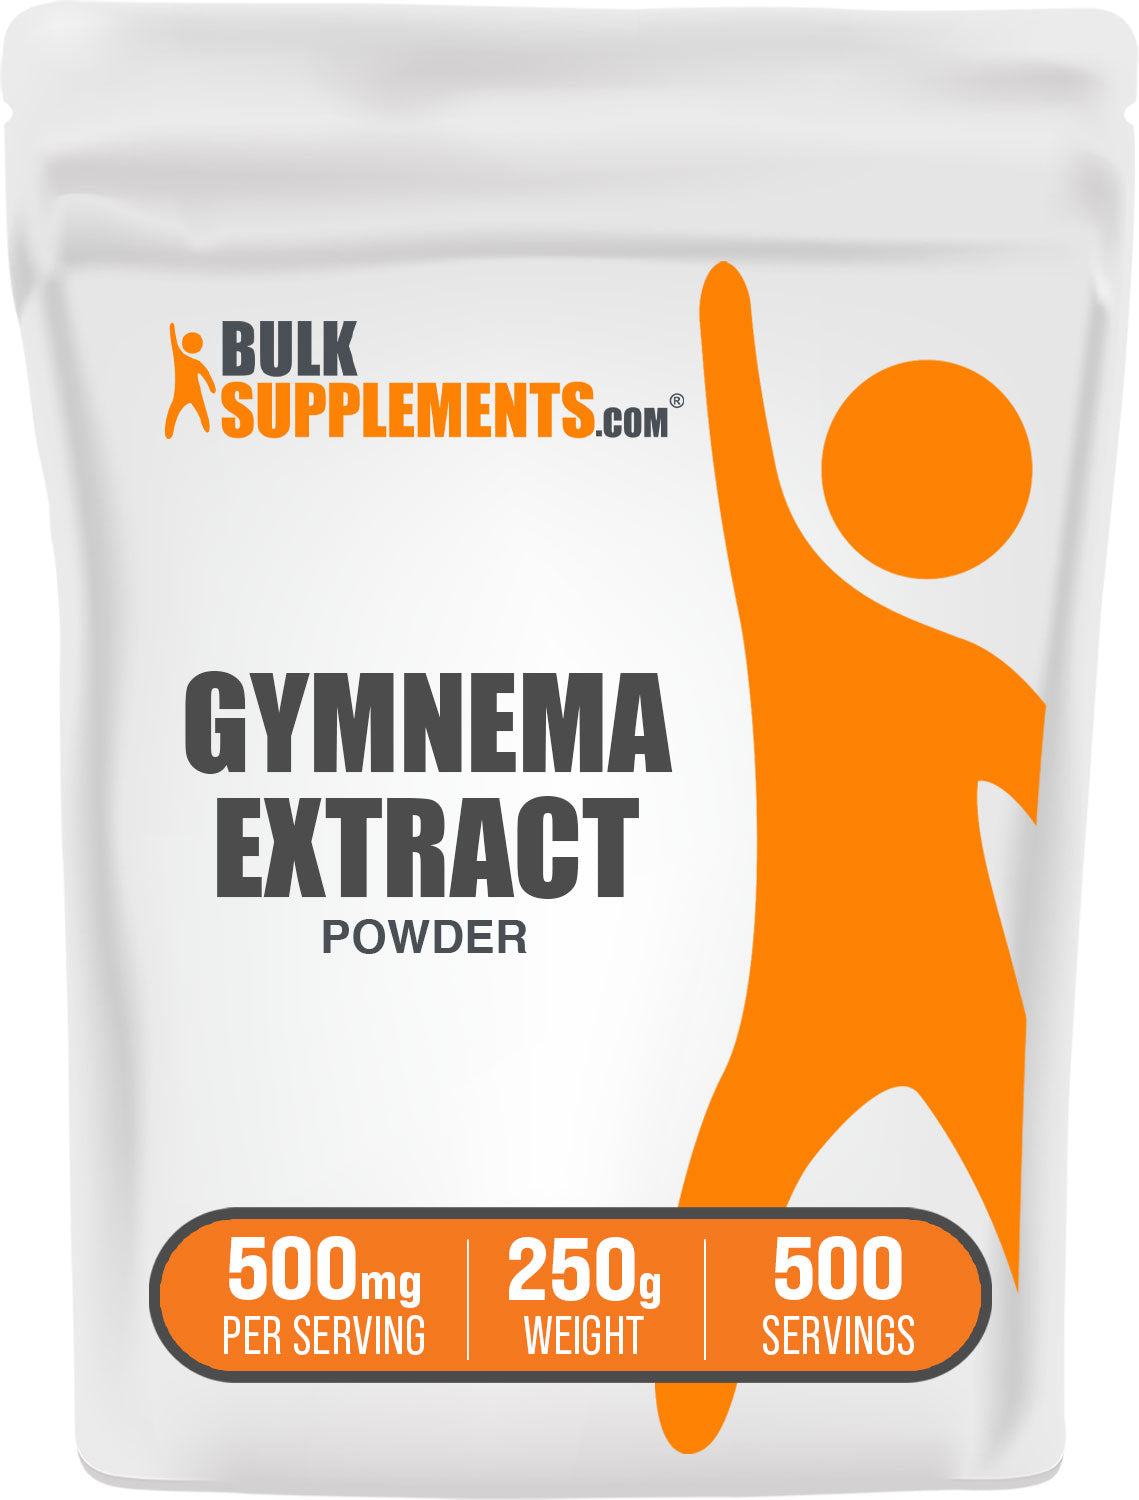 Gymnema-extractpoeder